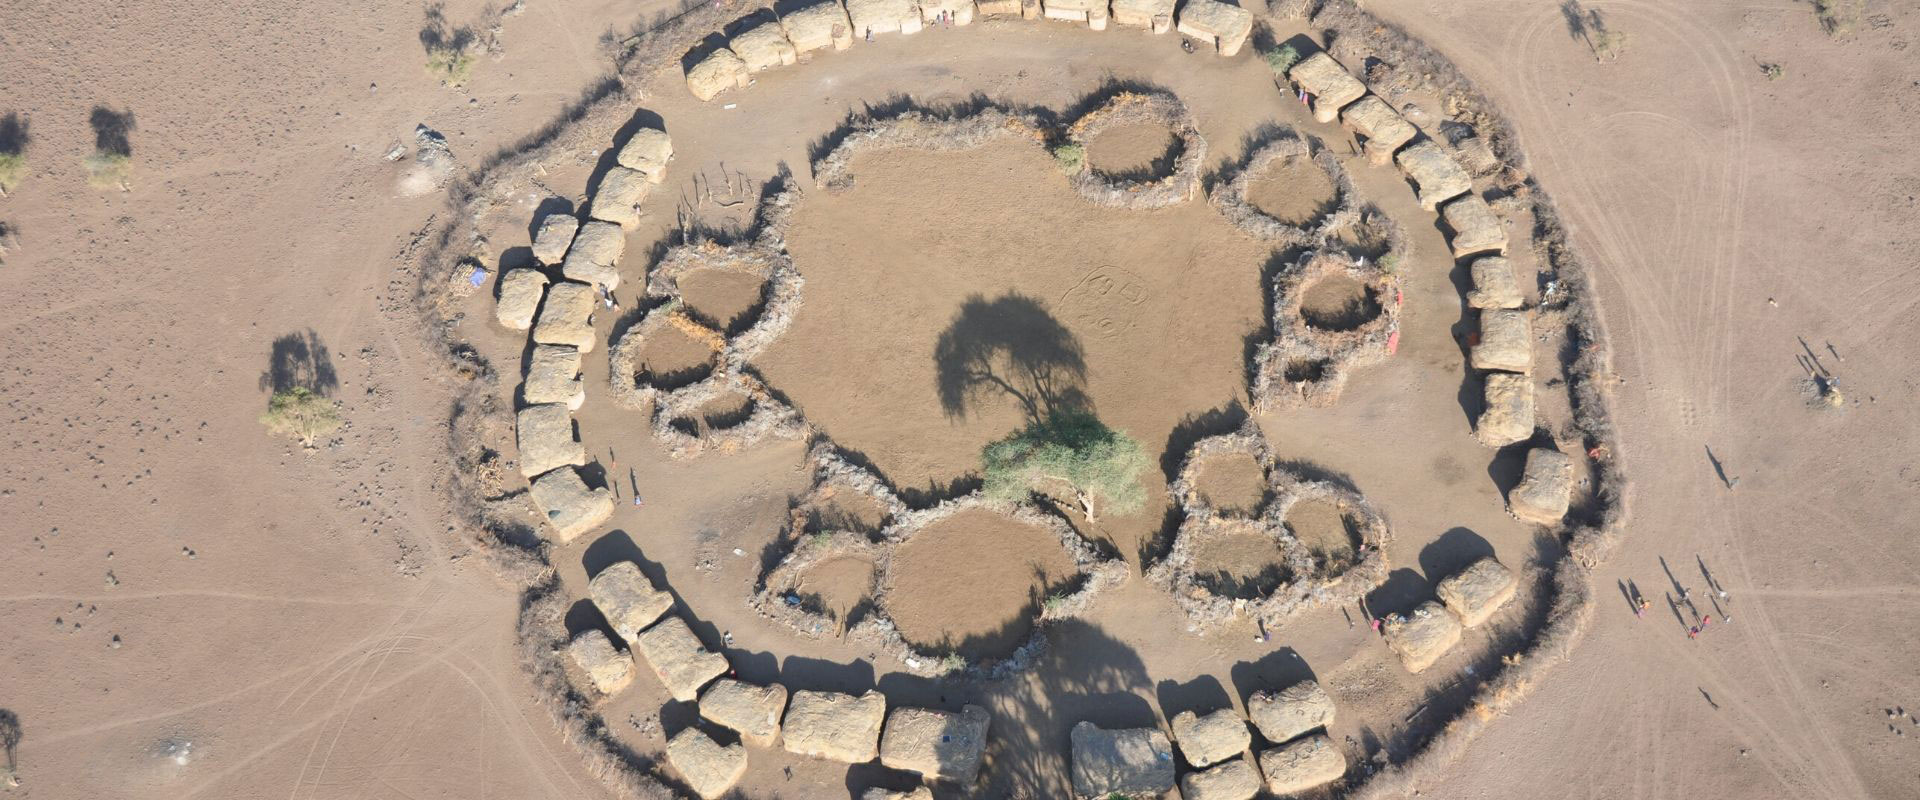 foto aerea de poblado masai